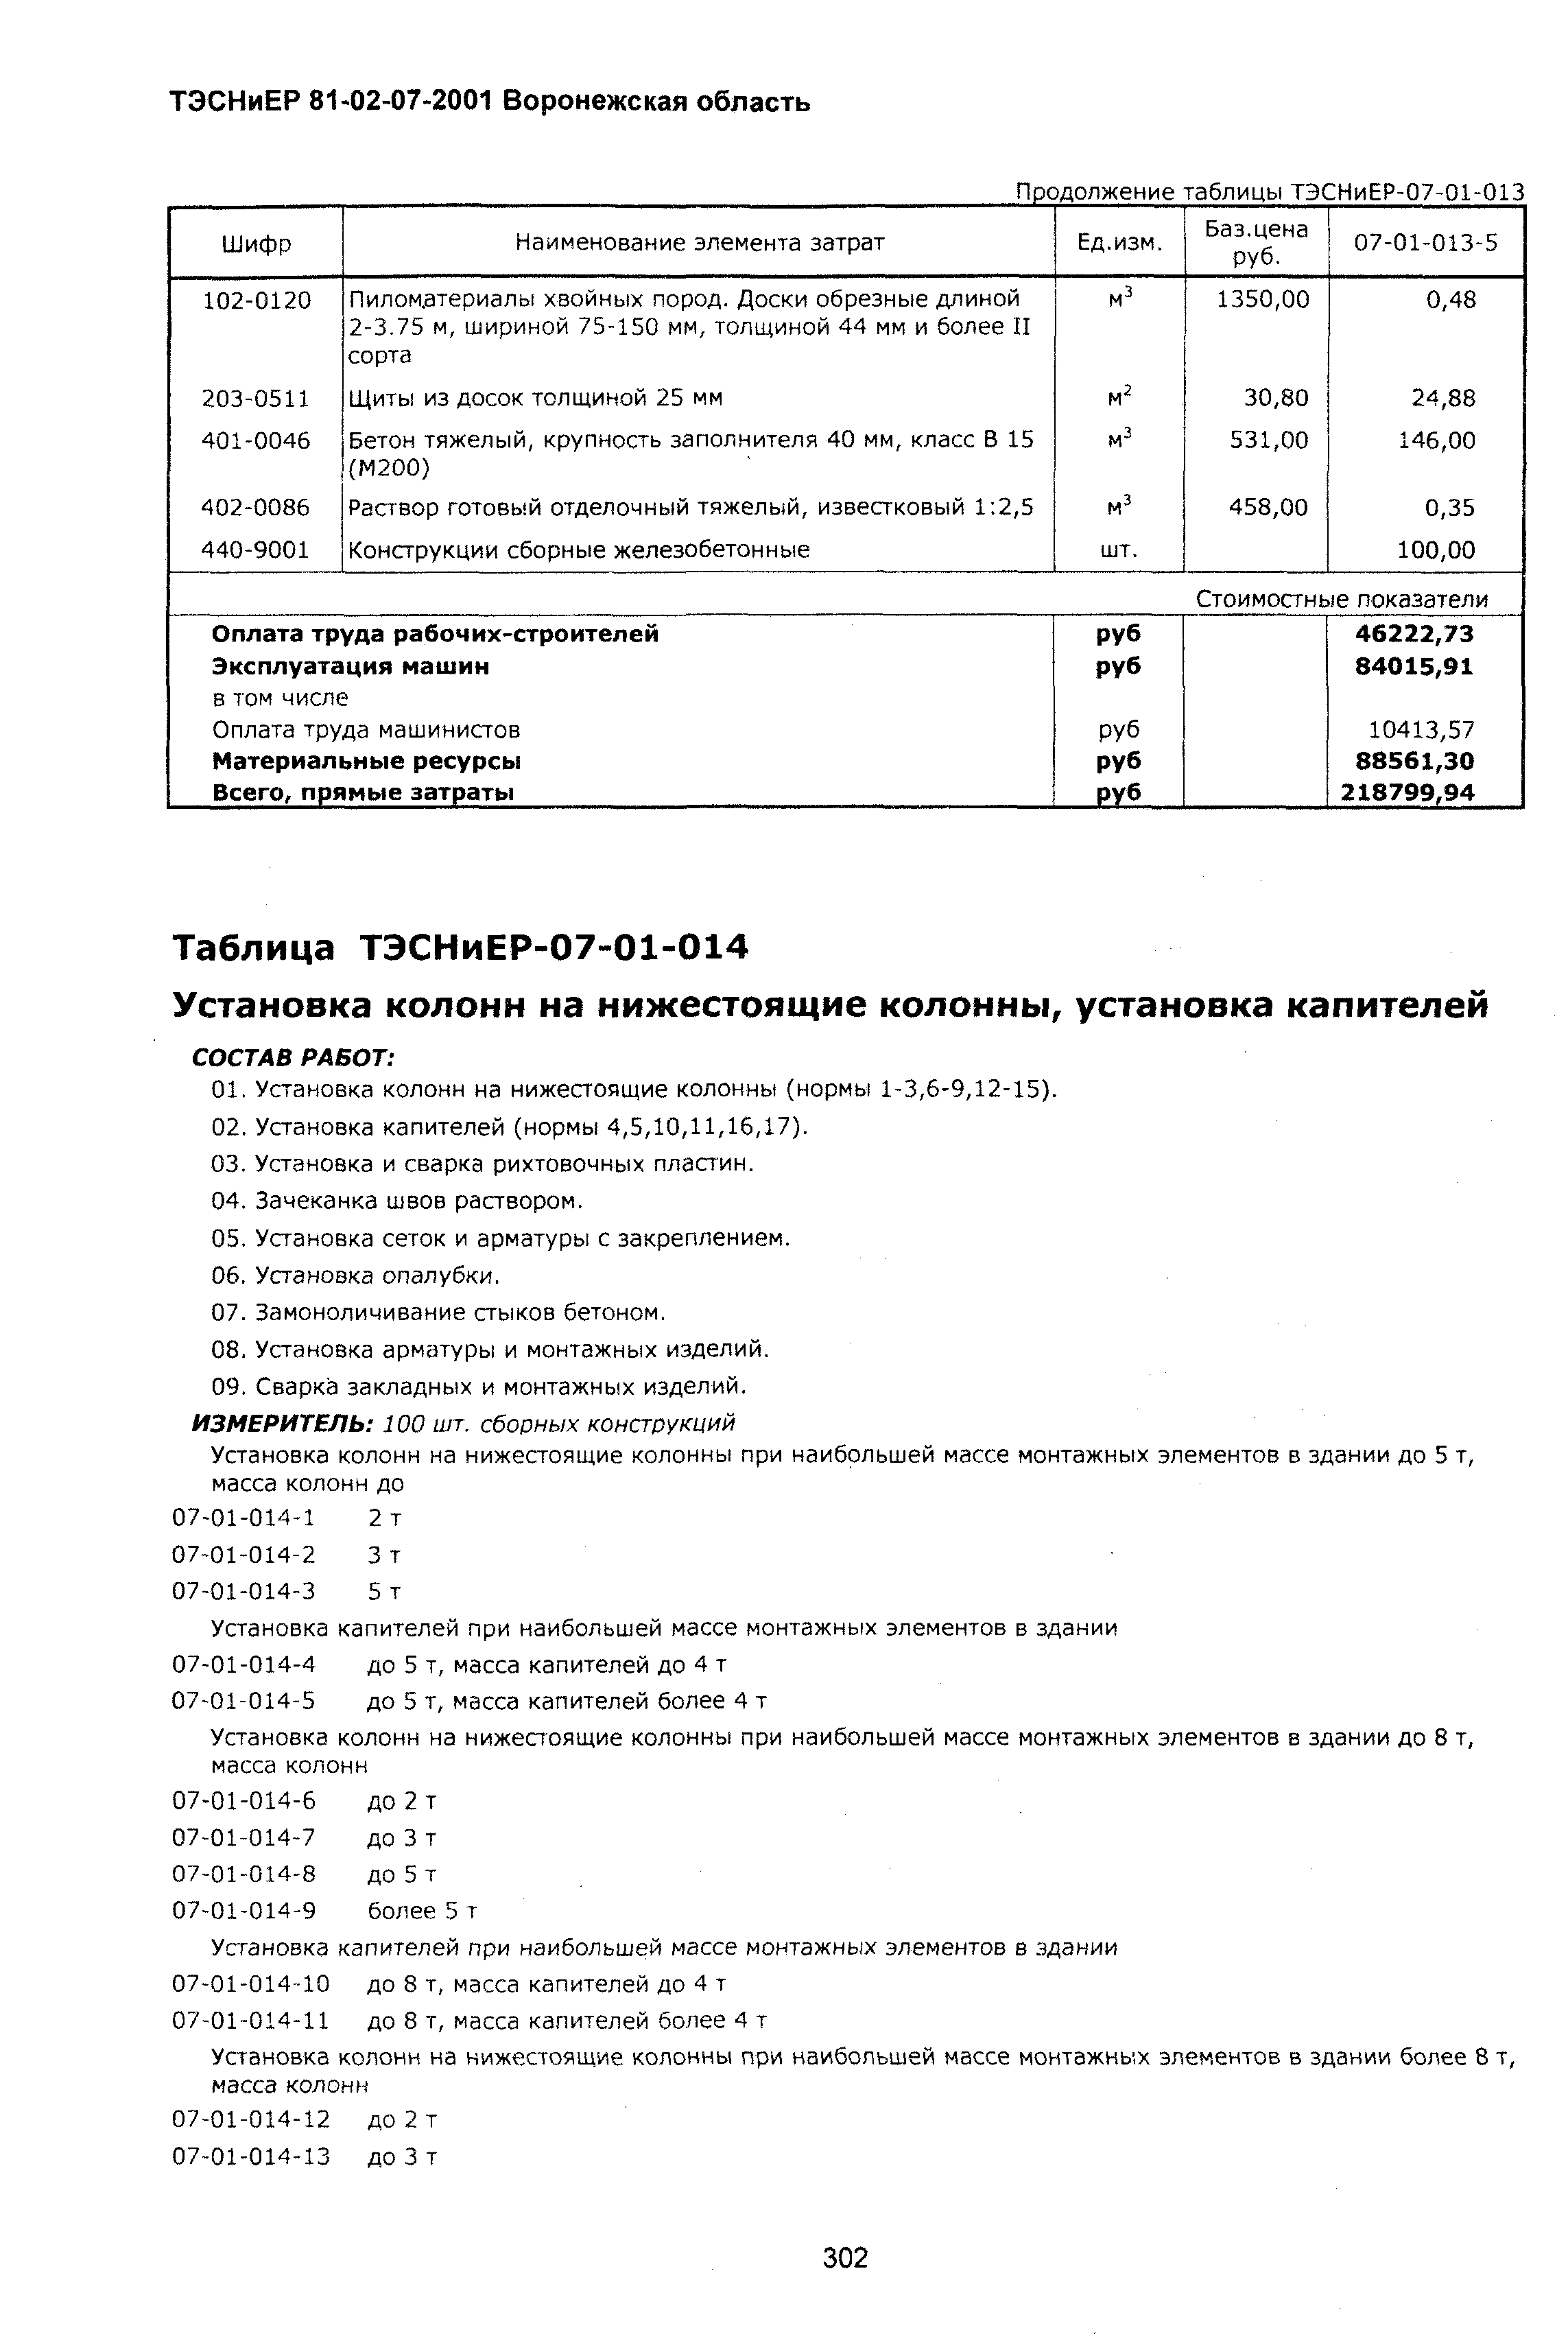 ТЭСНиЕР Воронежская область 81-02-07-2001